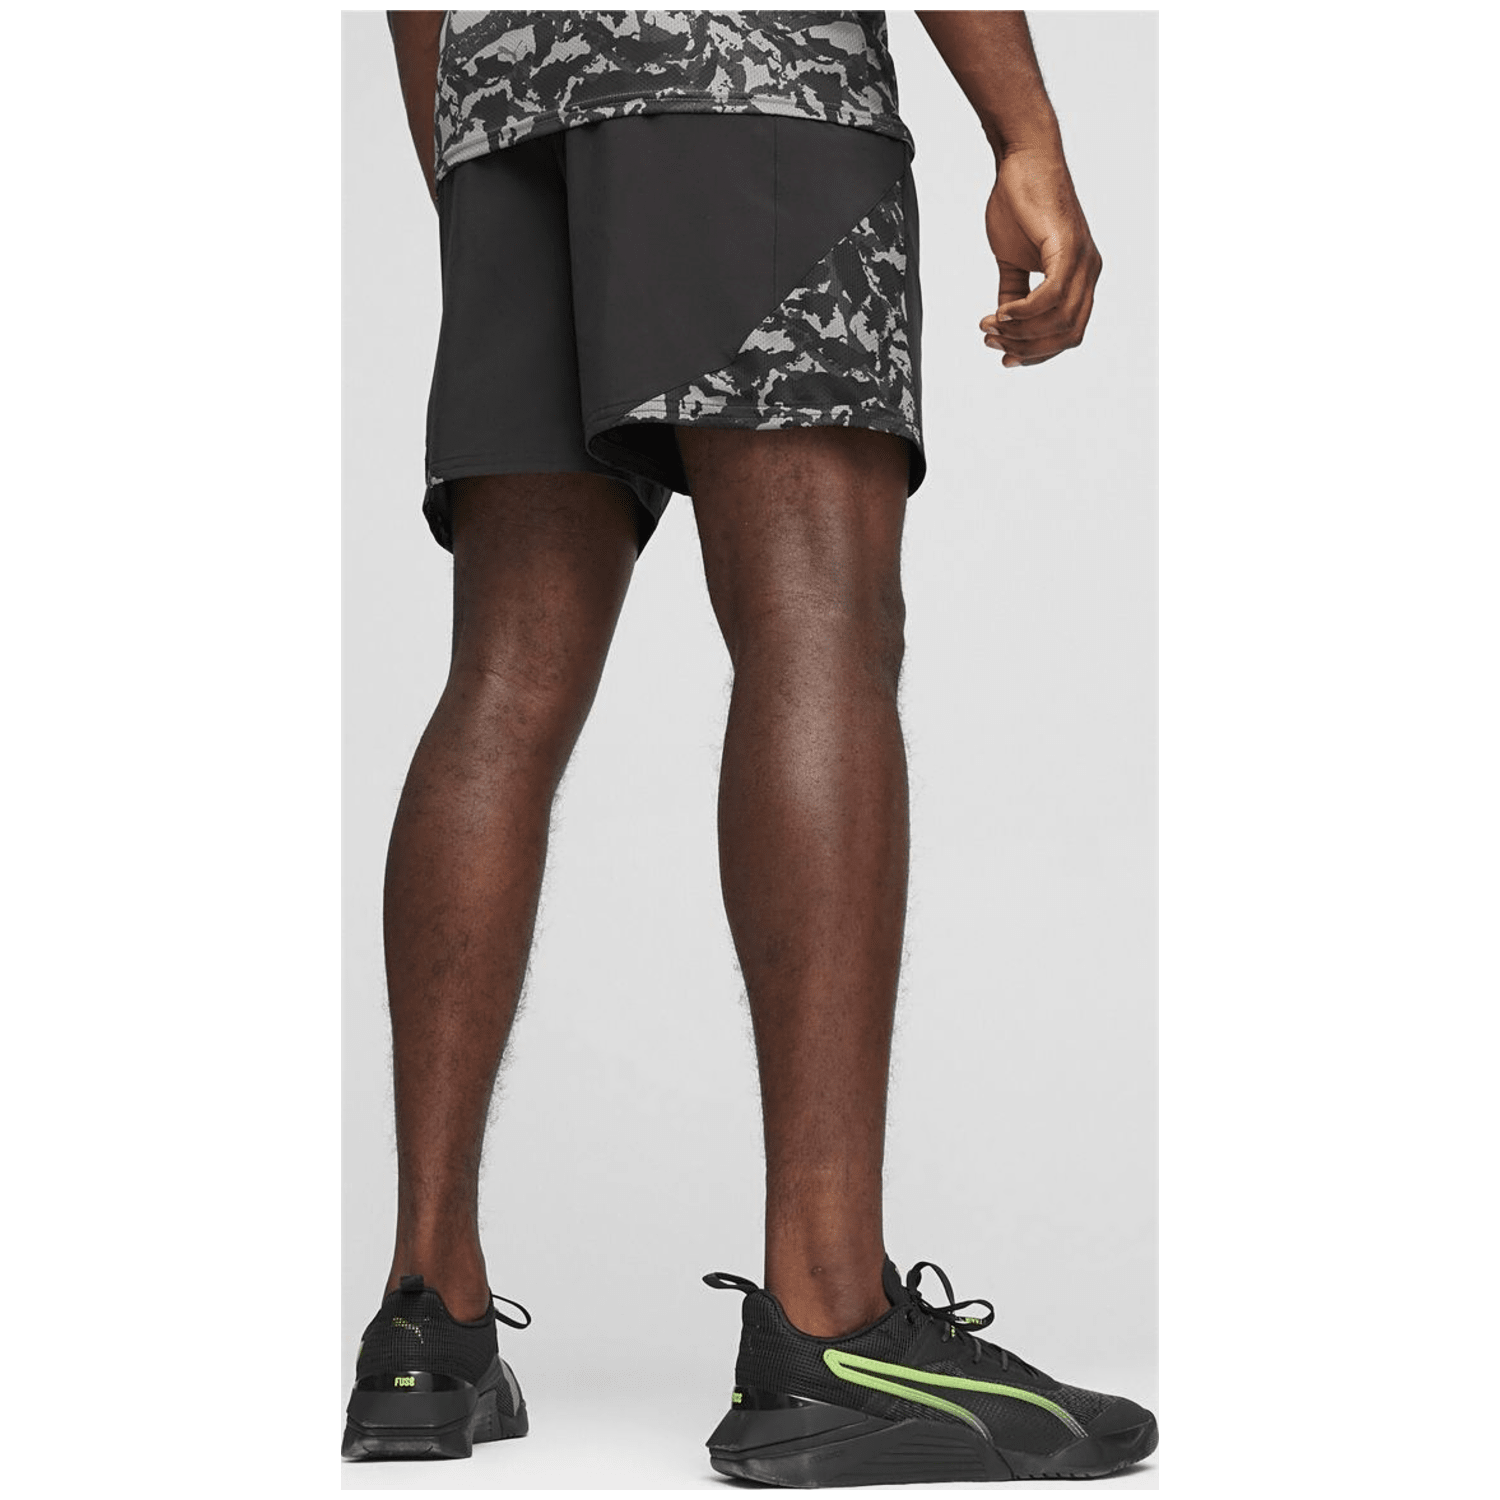 Puma FIT 7" Ultrabreathe Stretch AOP Herren Shorts